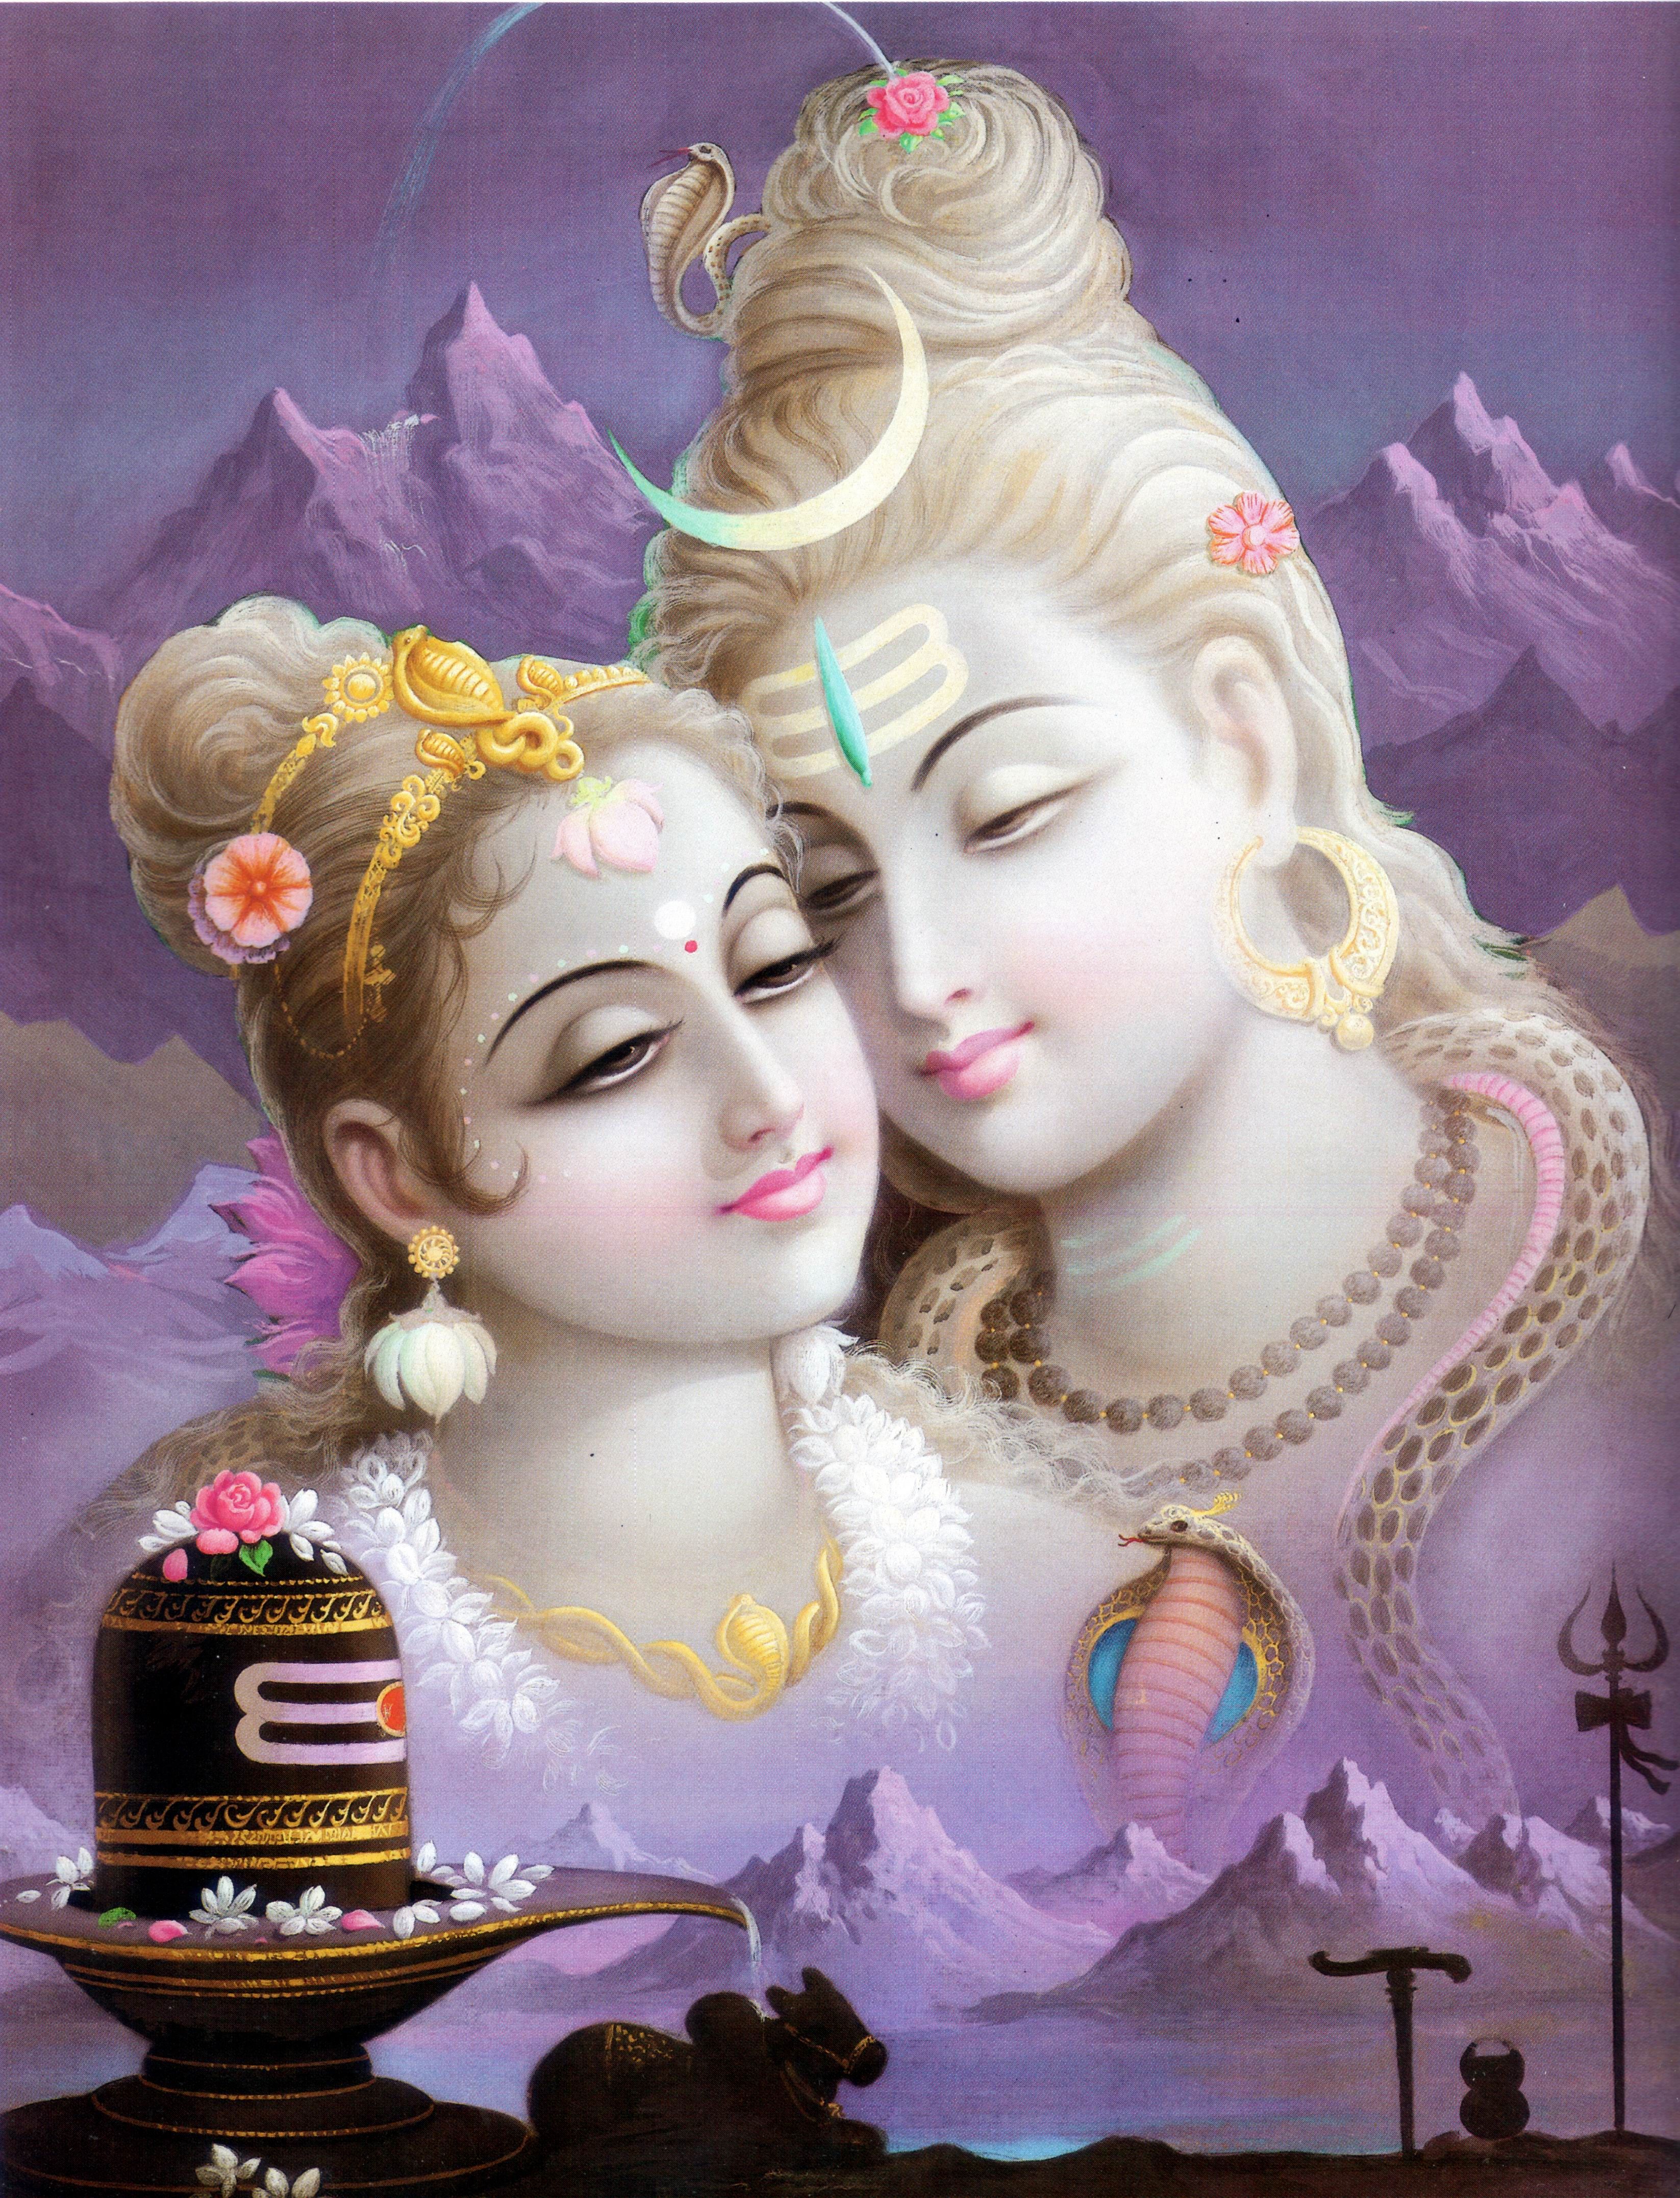 GOD SHIV & Parvati. OM Namah Shivay. Lord shiva family, Lord shiva, Shiva parvati image